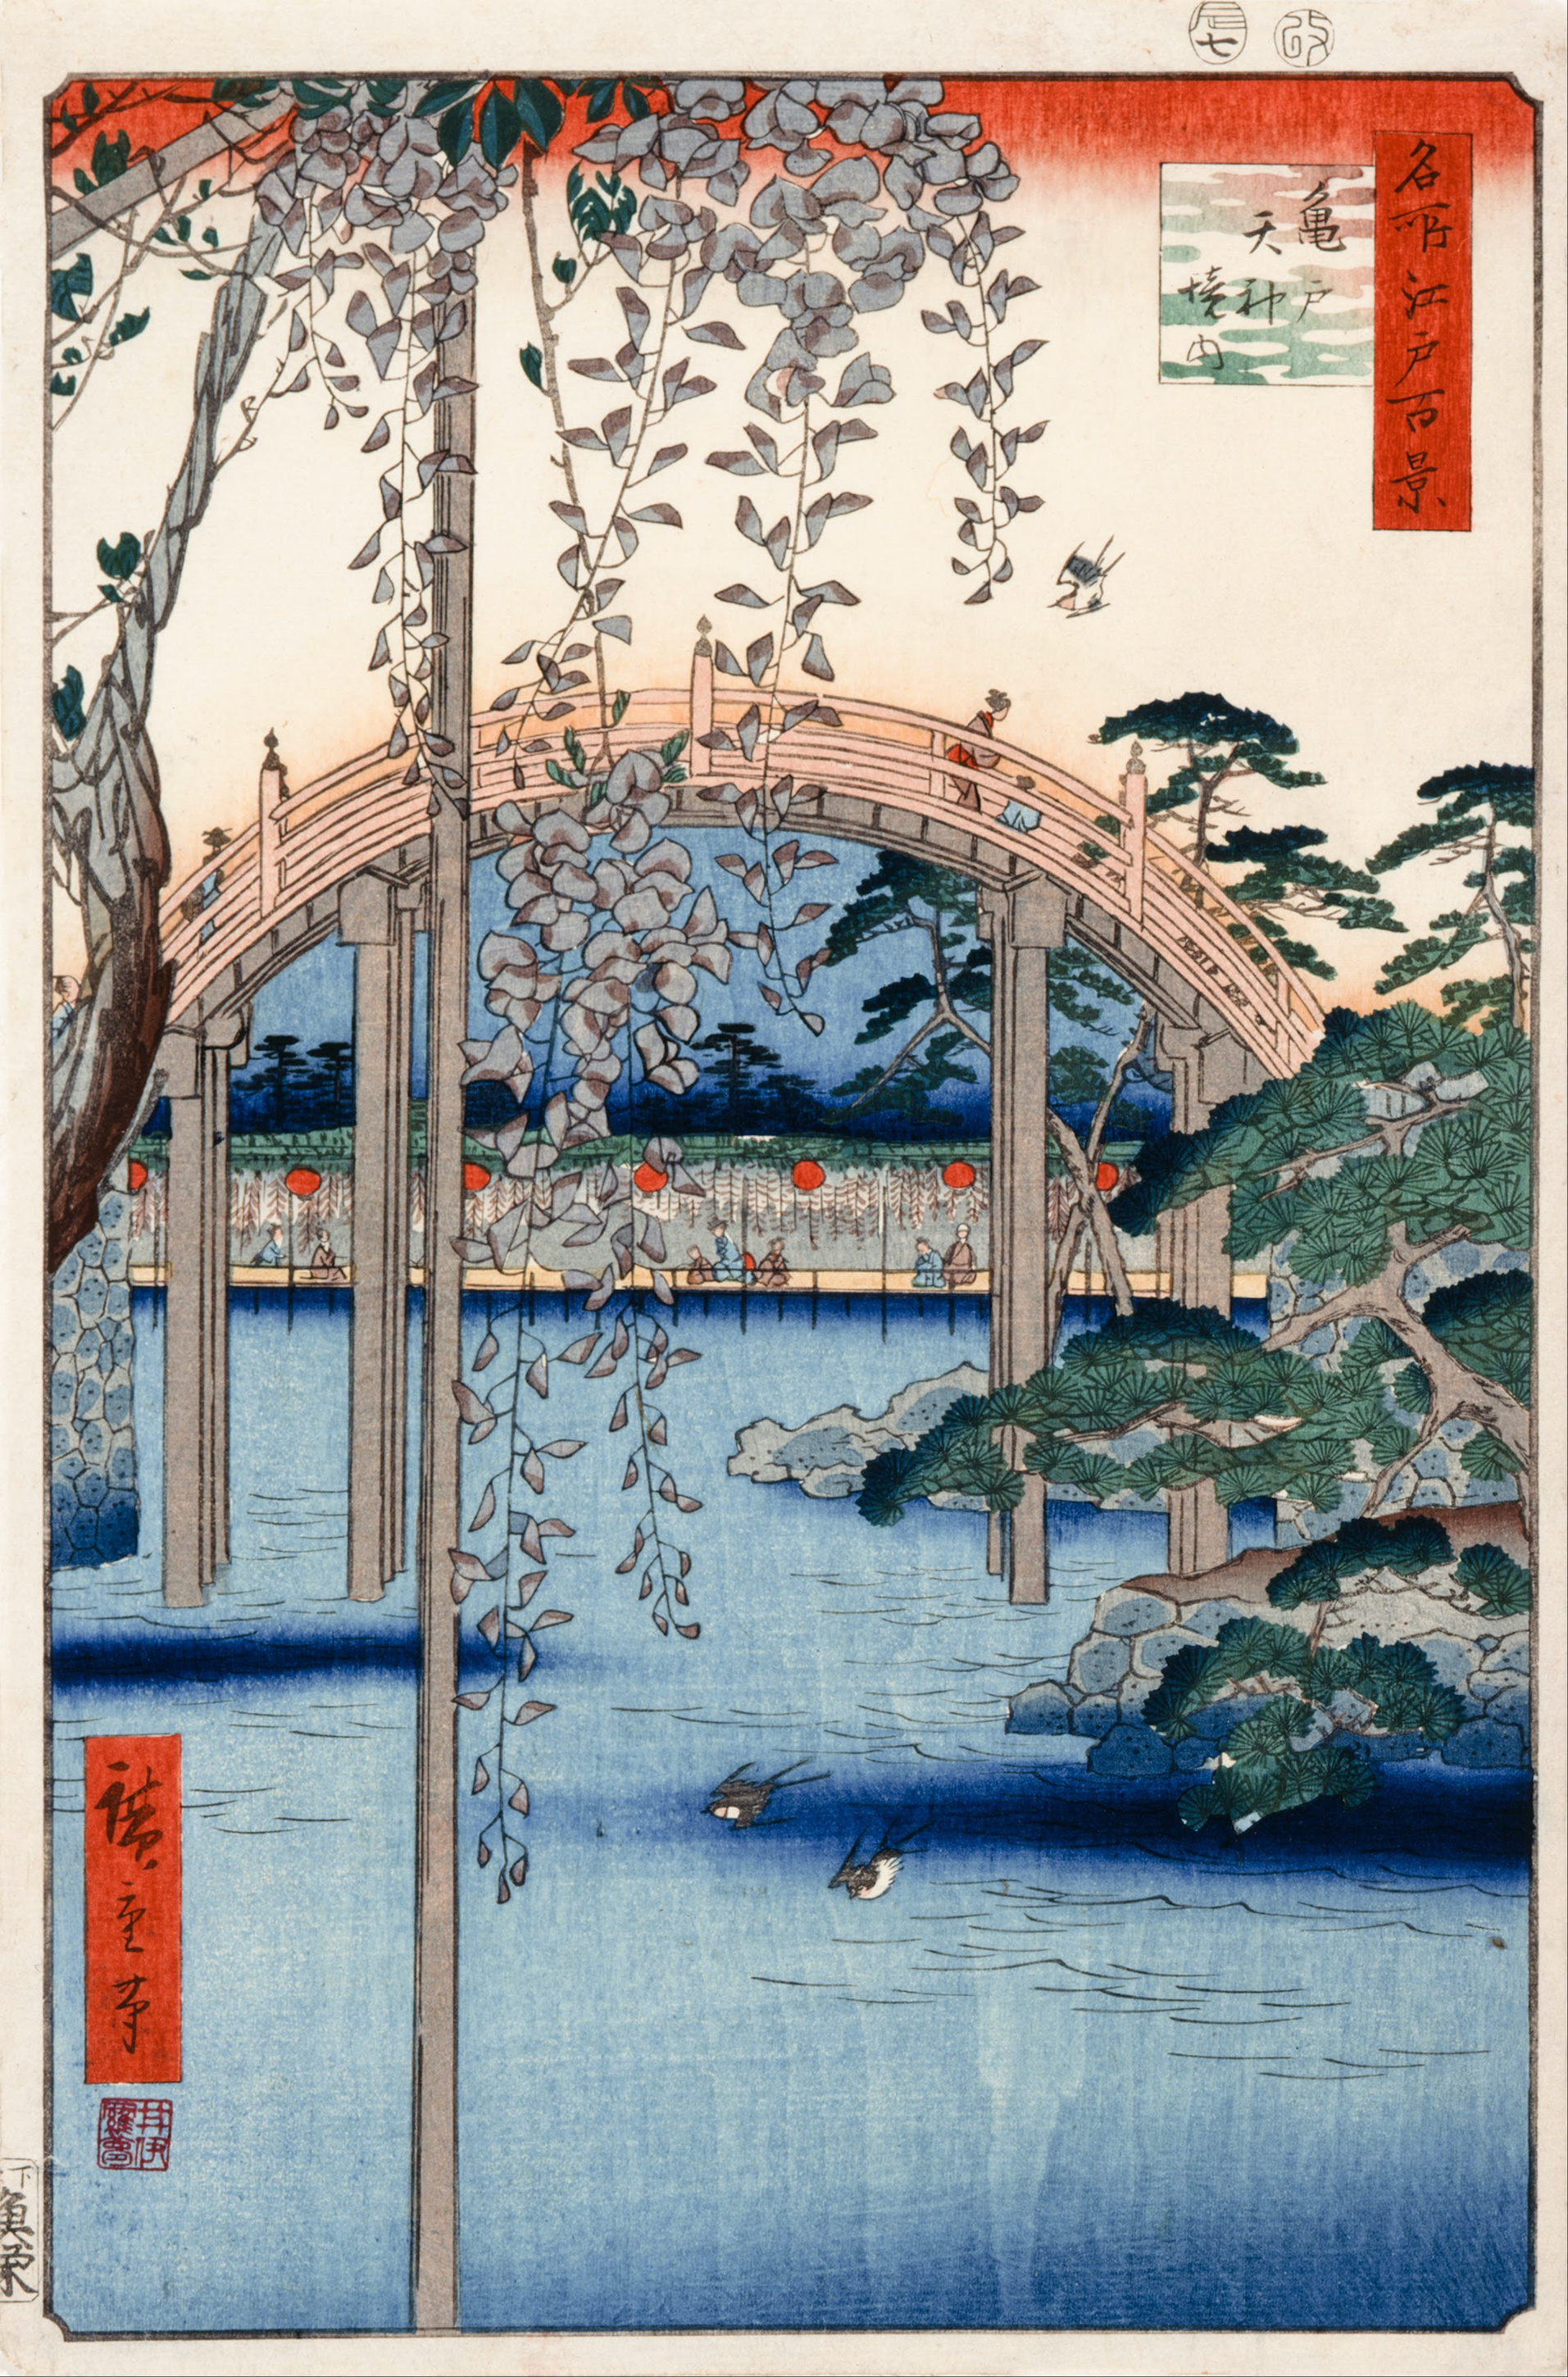 नंबर 57, कामेइदो तेनजिन श्राइन का मैदान by  Hiroshige - 1856 - 34 x 22.9 सेमी 